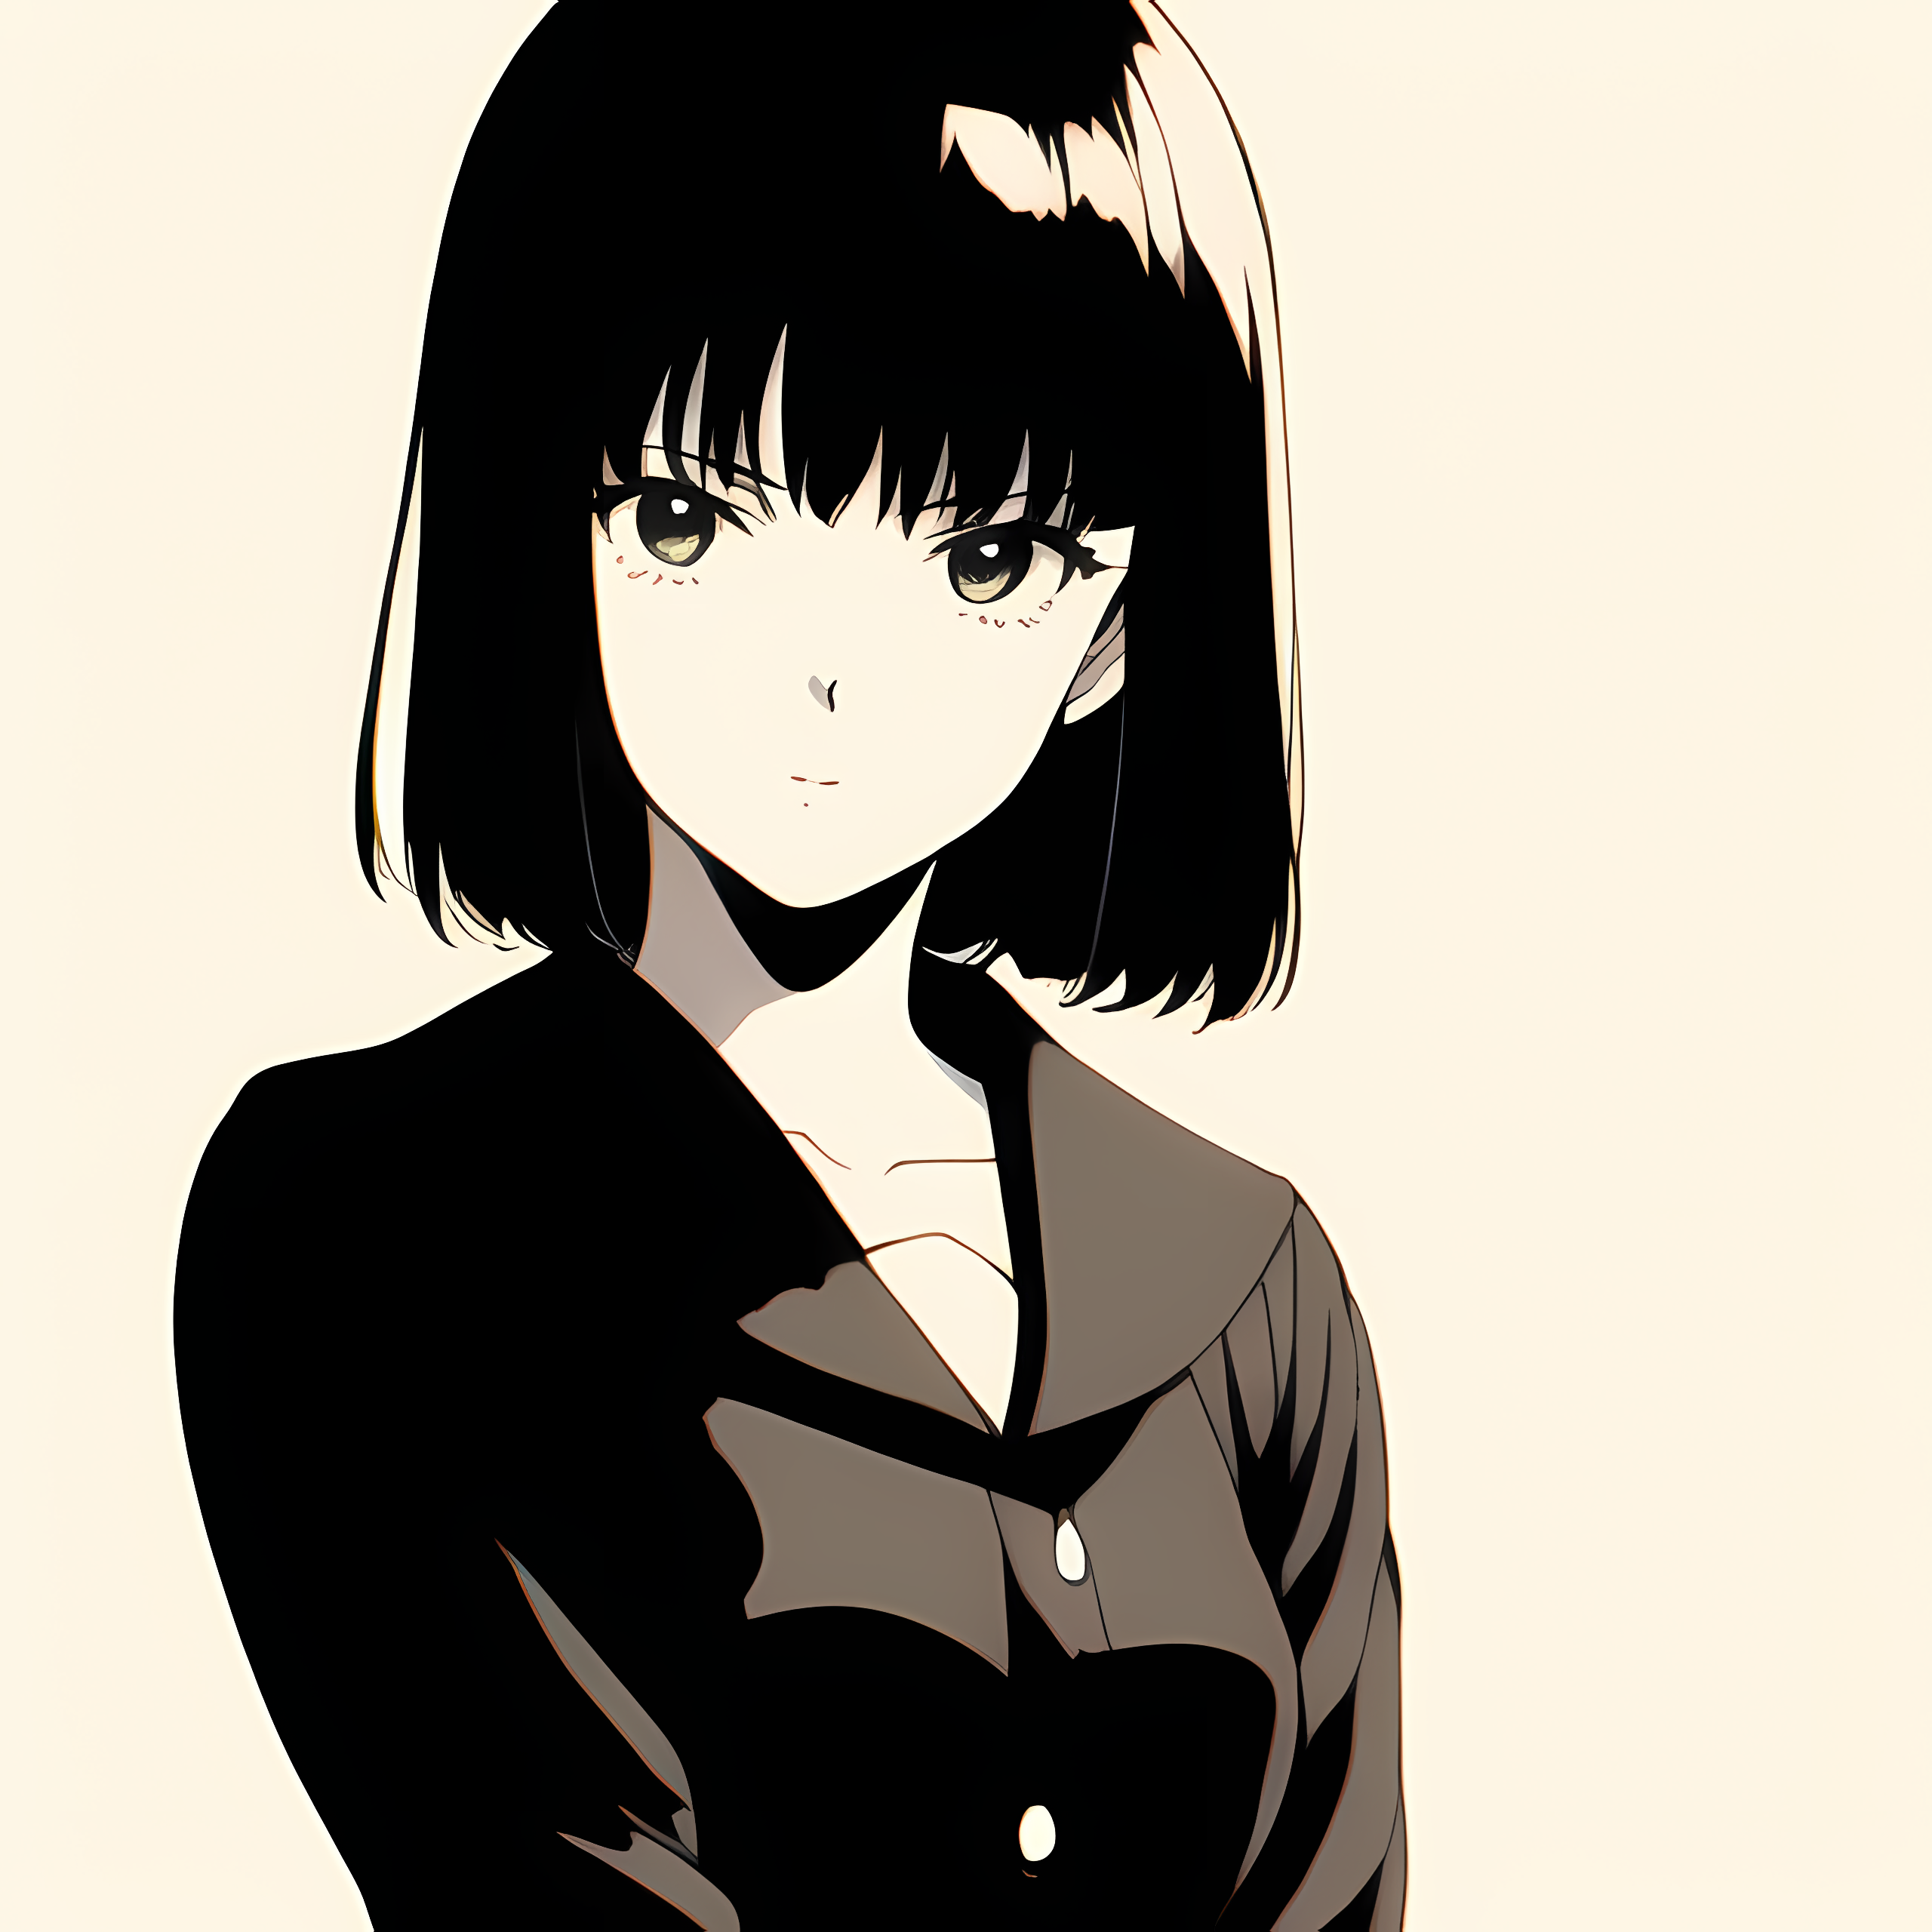 Novel Ai Anime Girls White Background Simple Background Minimalism 2560x2560